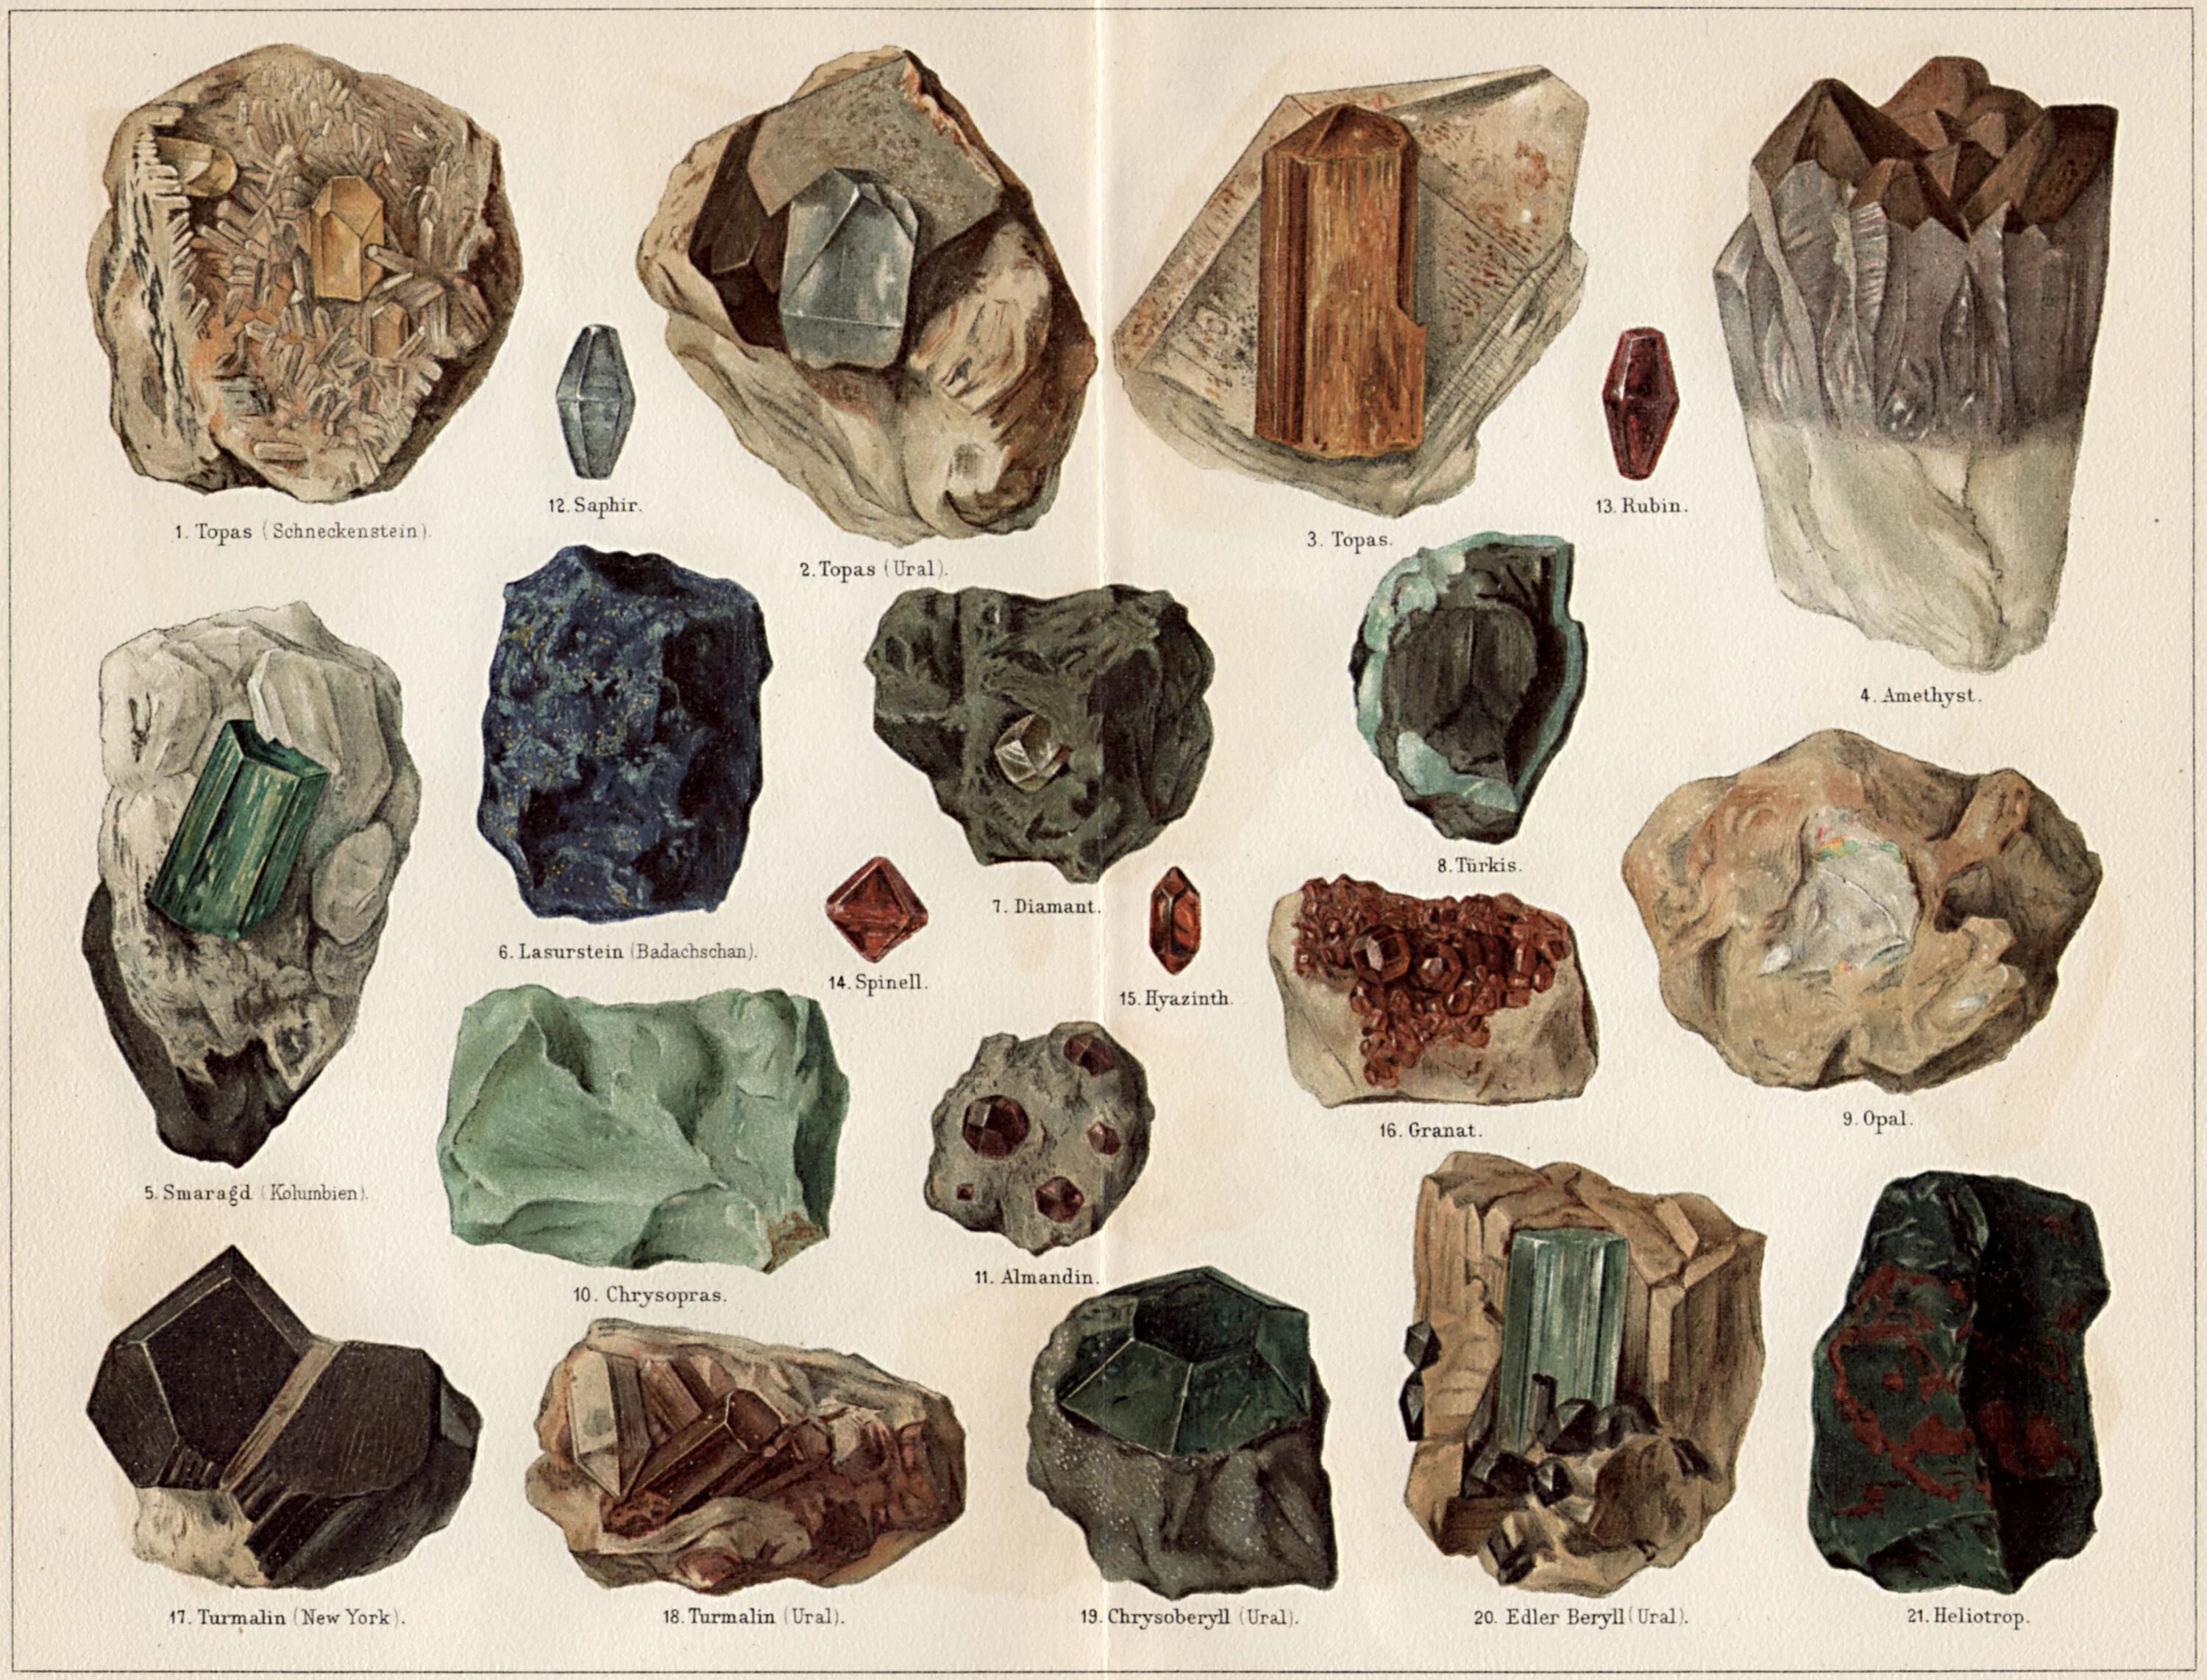 Какая порода камня. Неограненные драгоценные камни 19 века. Горные камни и минералы. Породы камней с названиями. Минеральные породы камней.